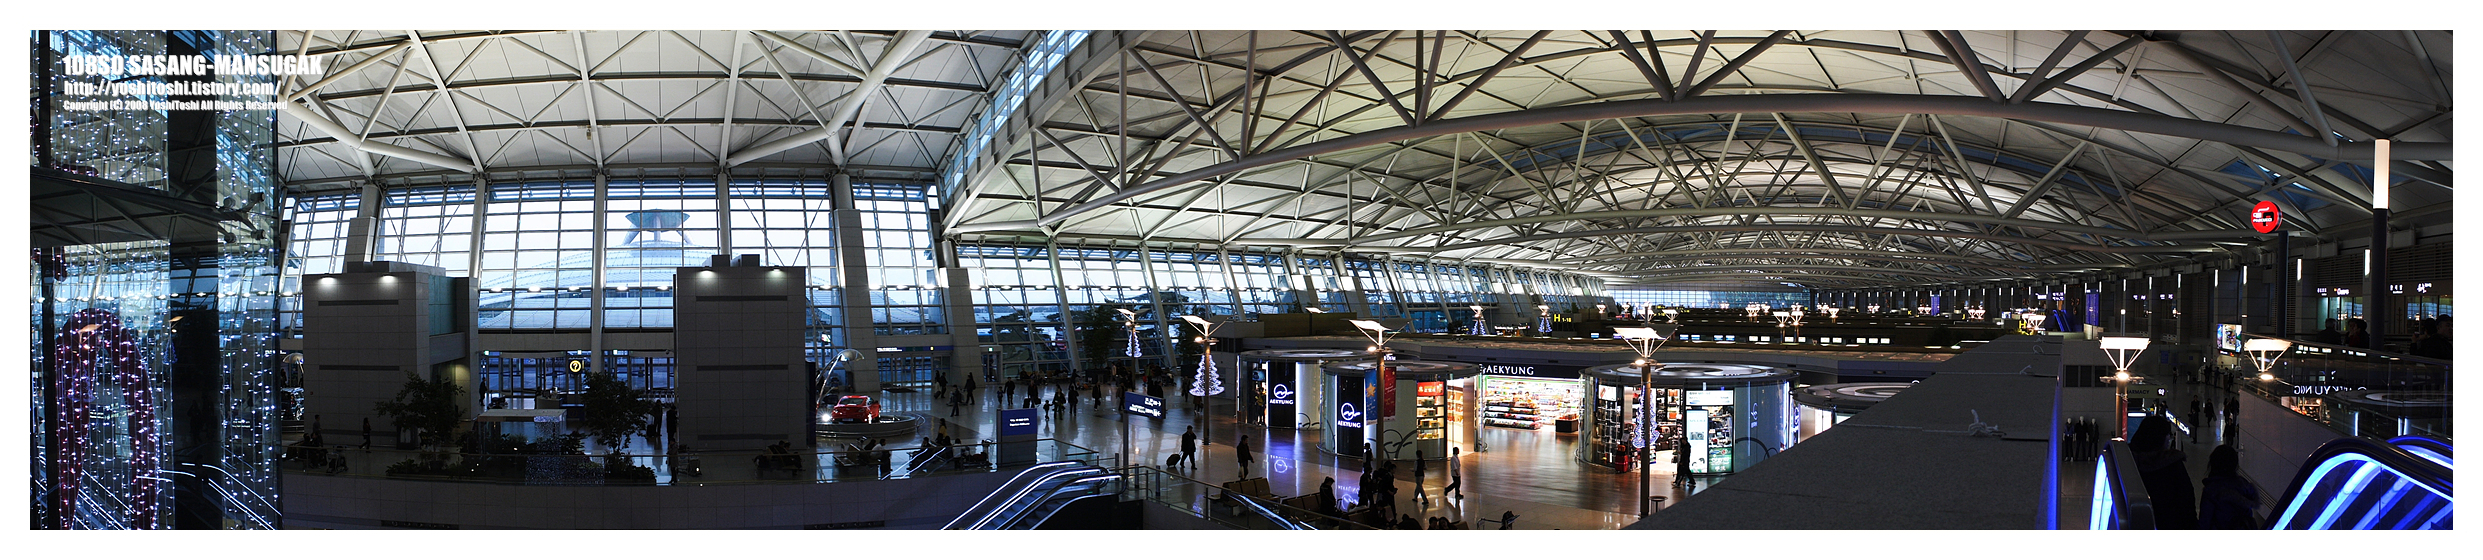 인천공항, 파노라마 사진8